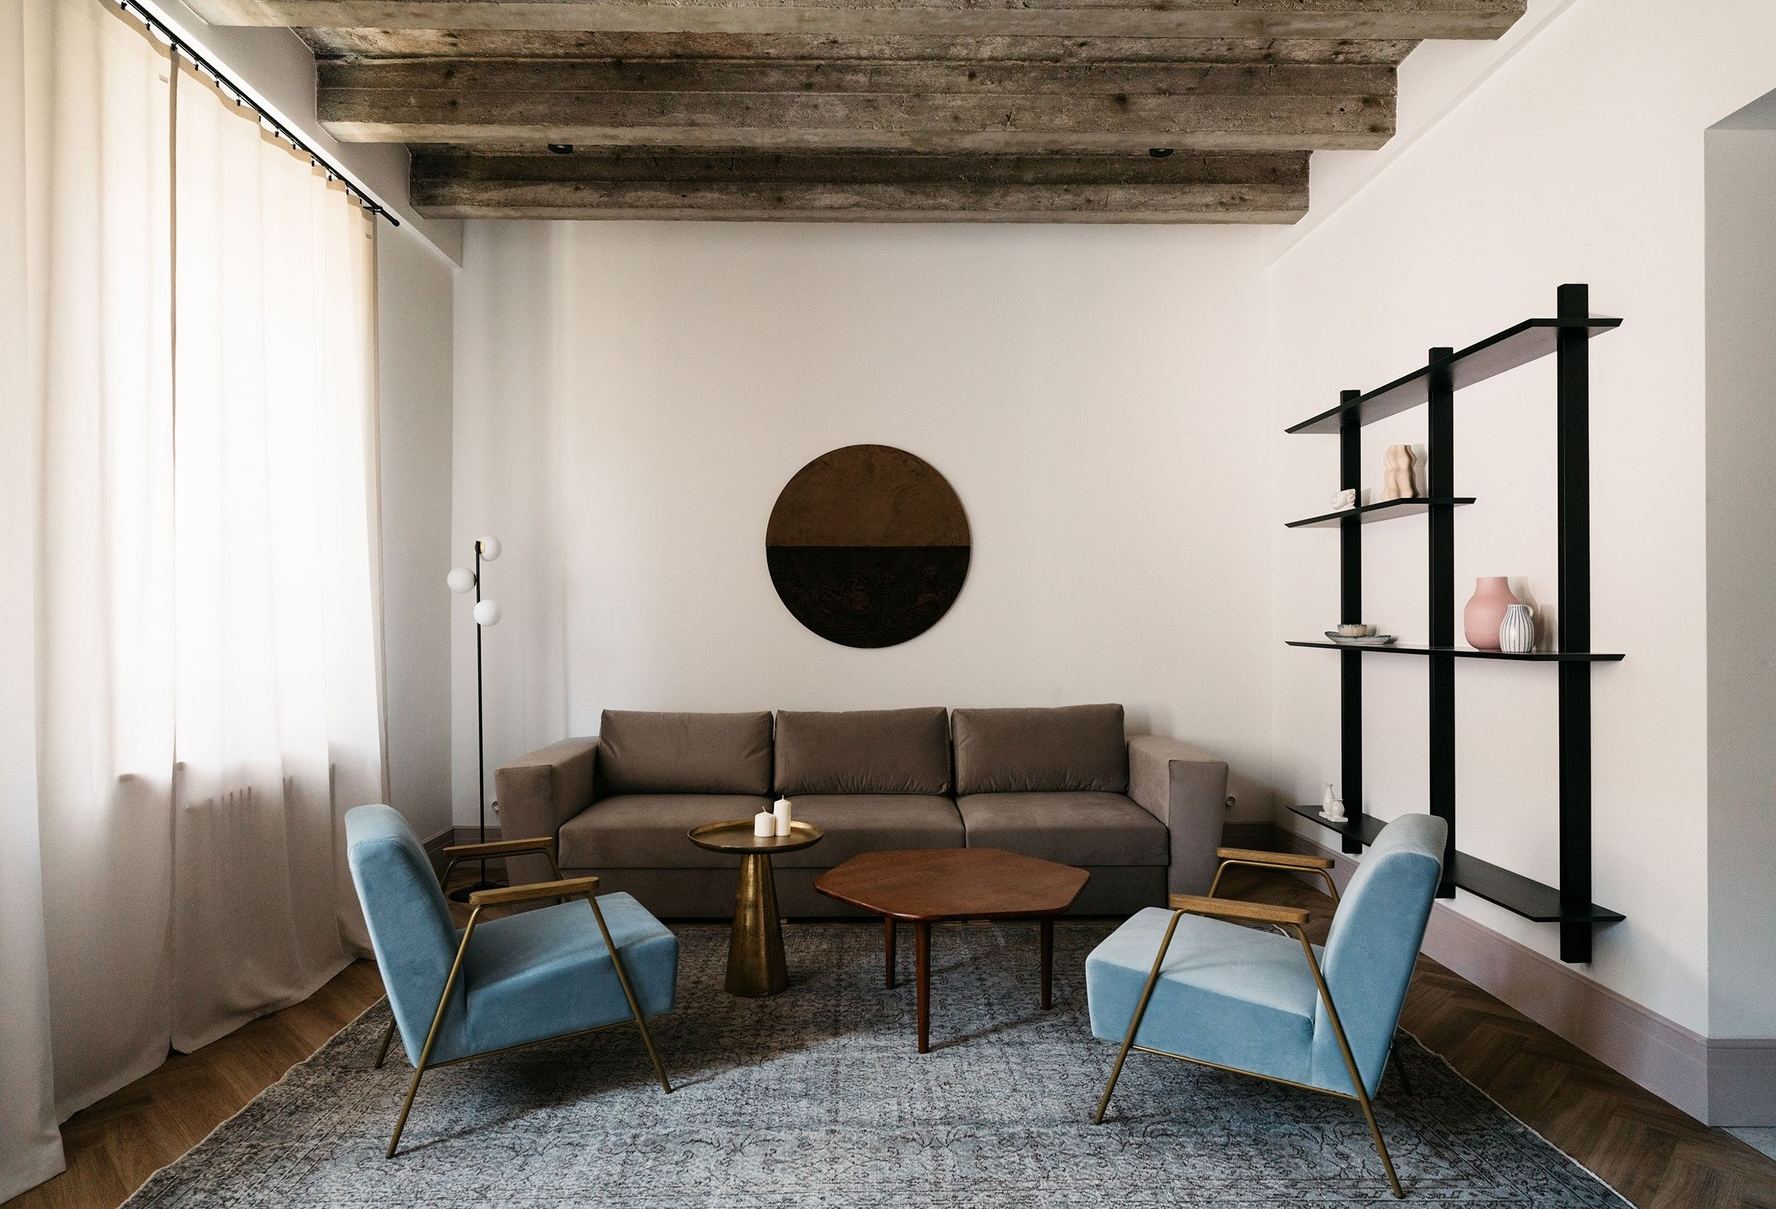 Phòng khách với bộ ghế sofa màu nâu cổ điển kết hợp ghế bành màu xanh ngọc lam tươi sáng, hiện đại, xếp đặt gọn gàng trên tấm thảm trải sàn cỡ lớn.